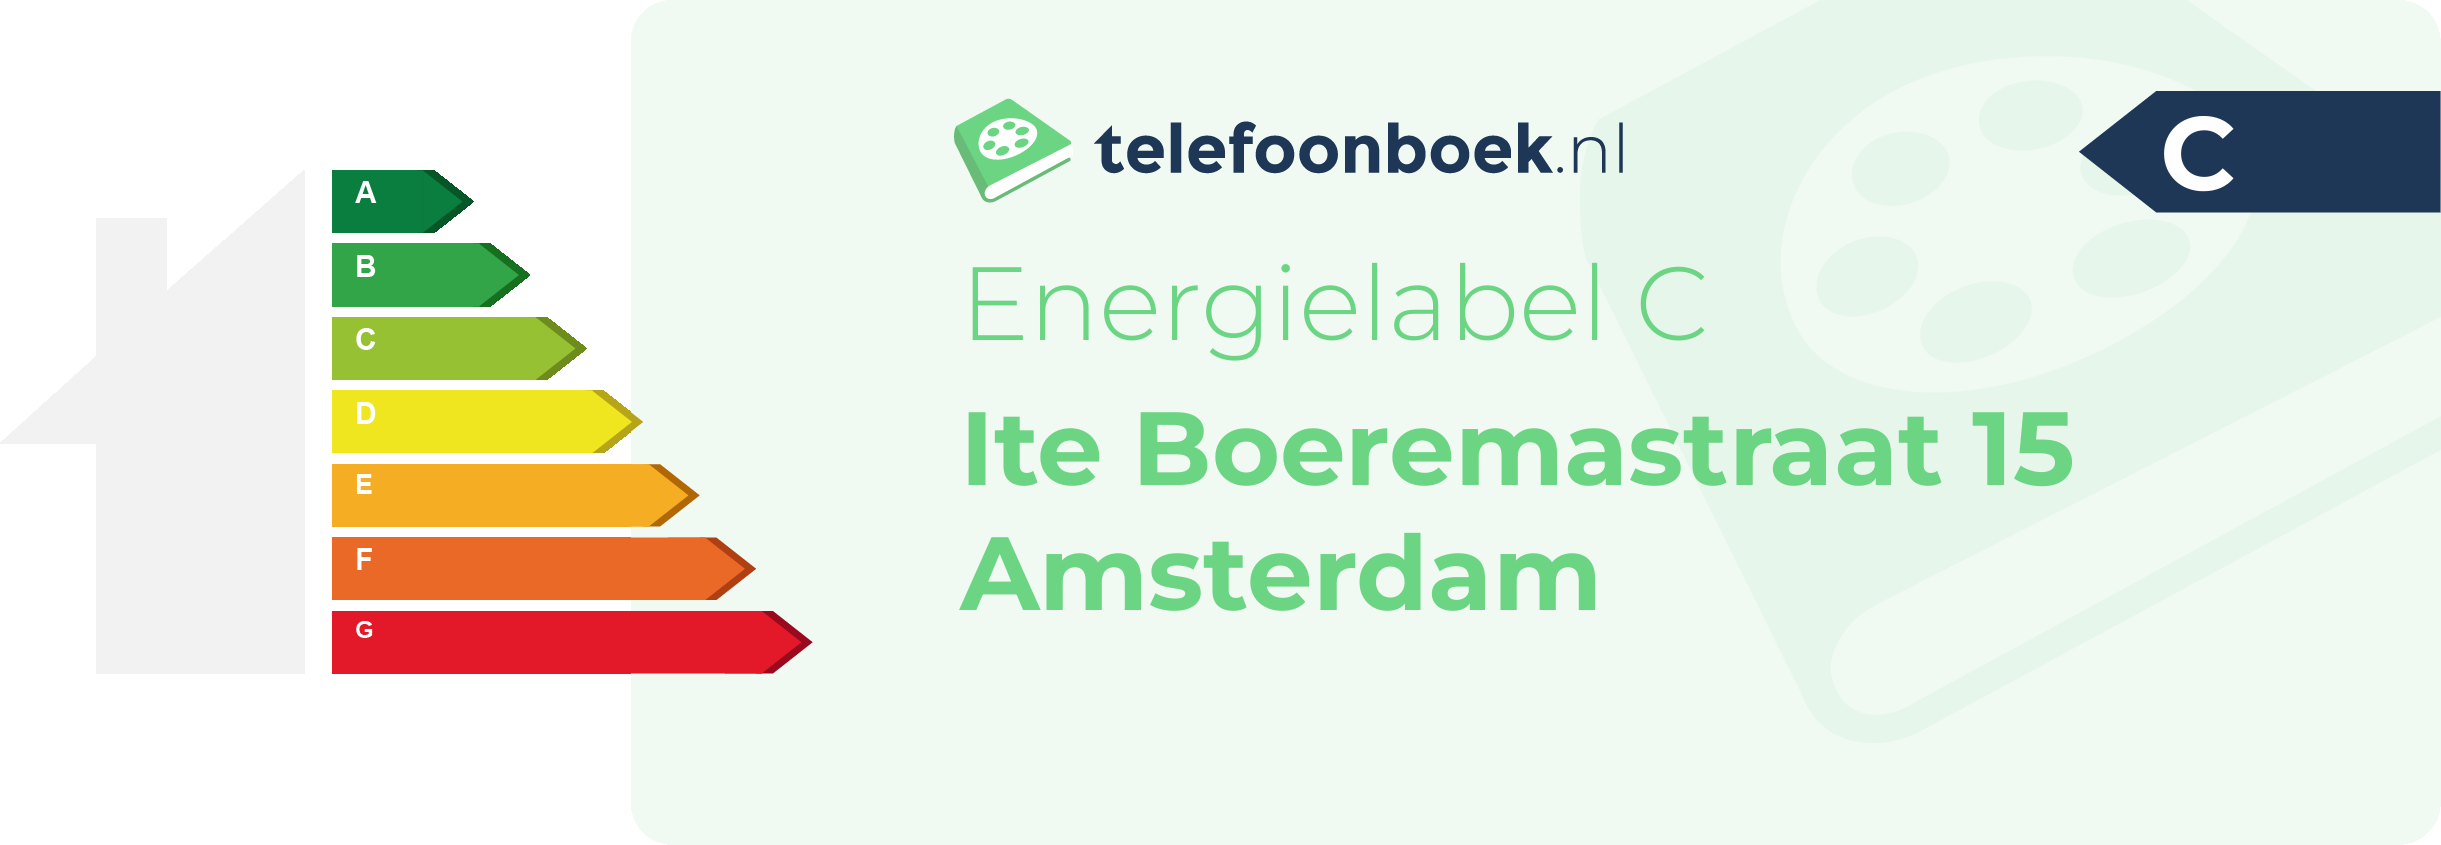 Energielabel Ite Boeremastraat 15 Amsterdam